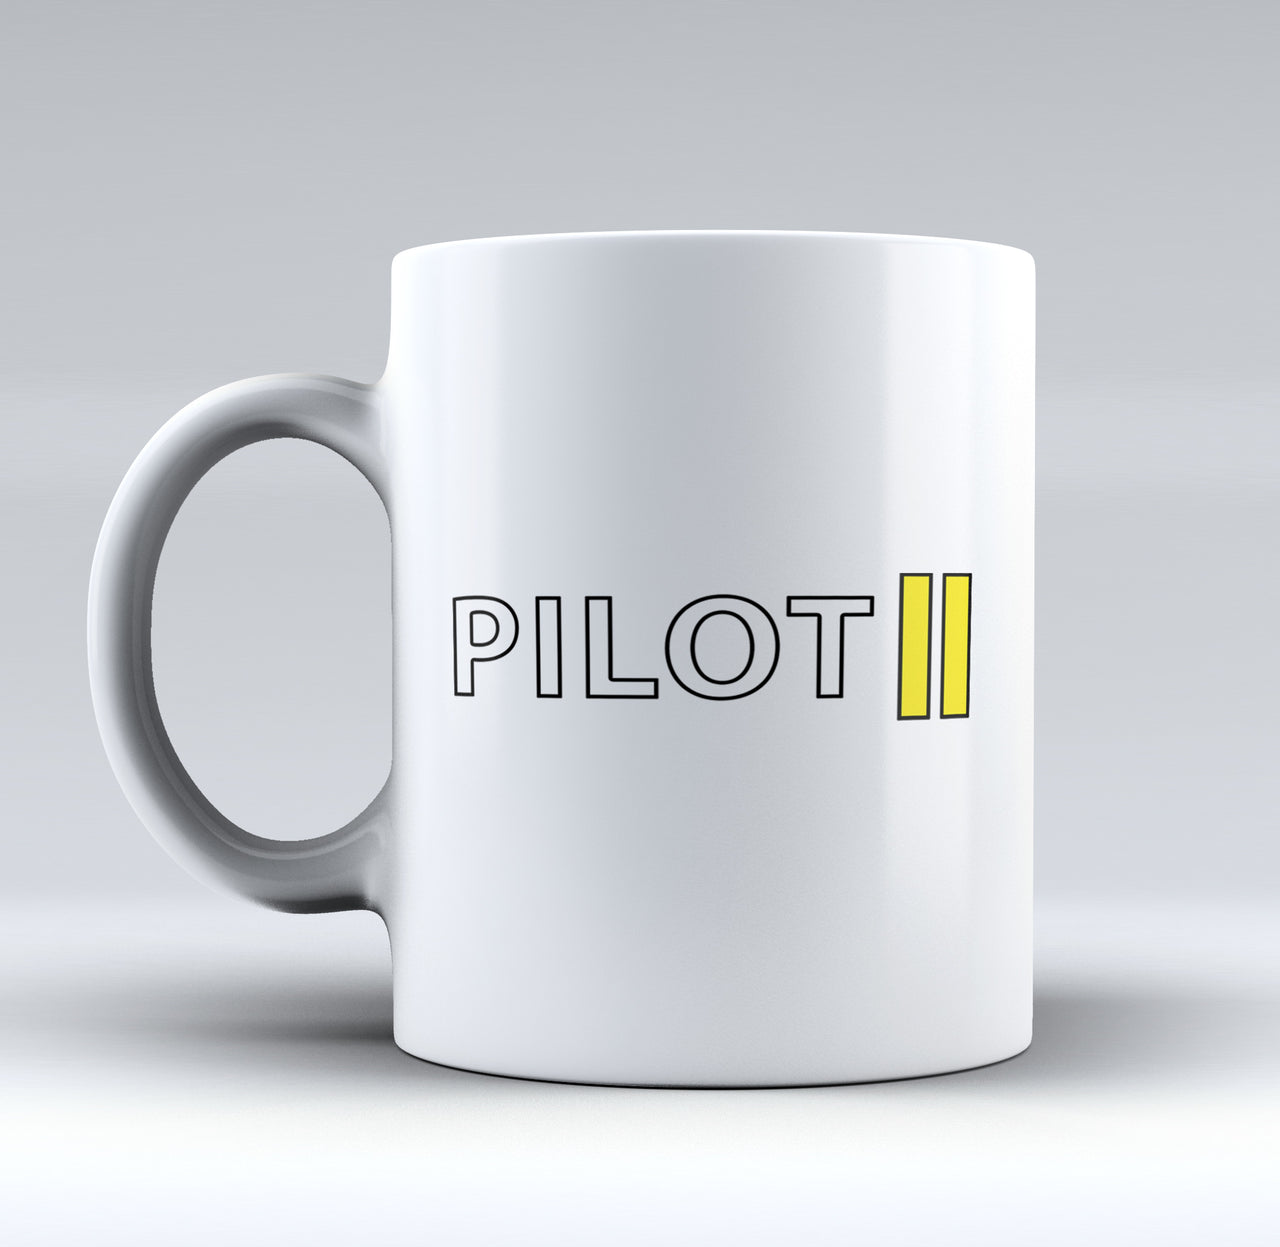 Pilot & Stripes (2 Lines) Designed Mugs